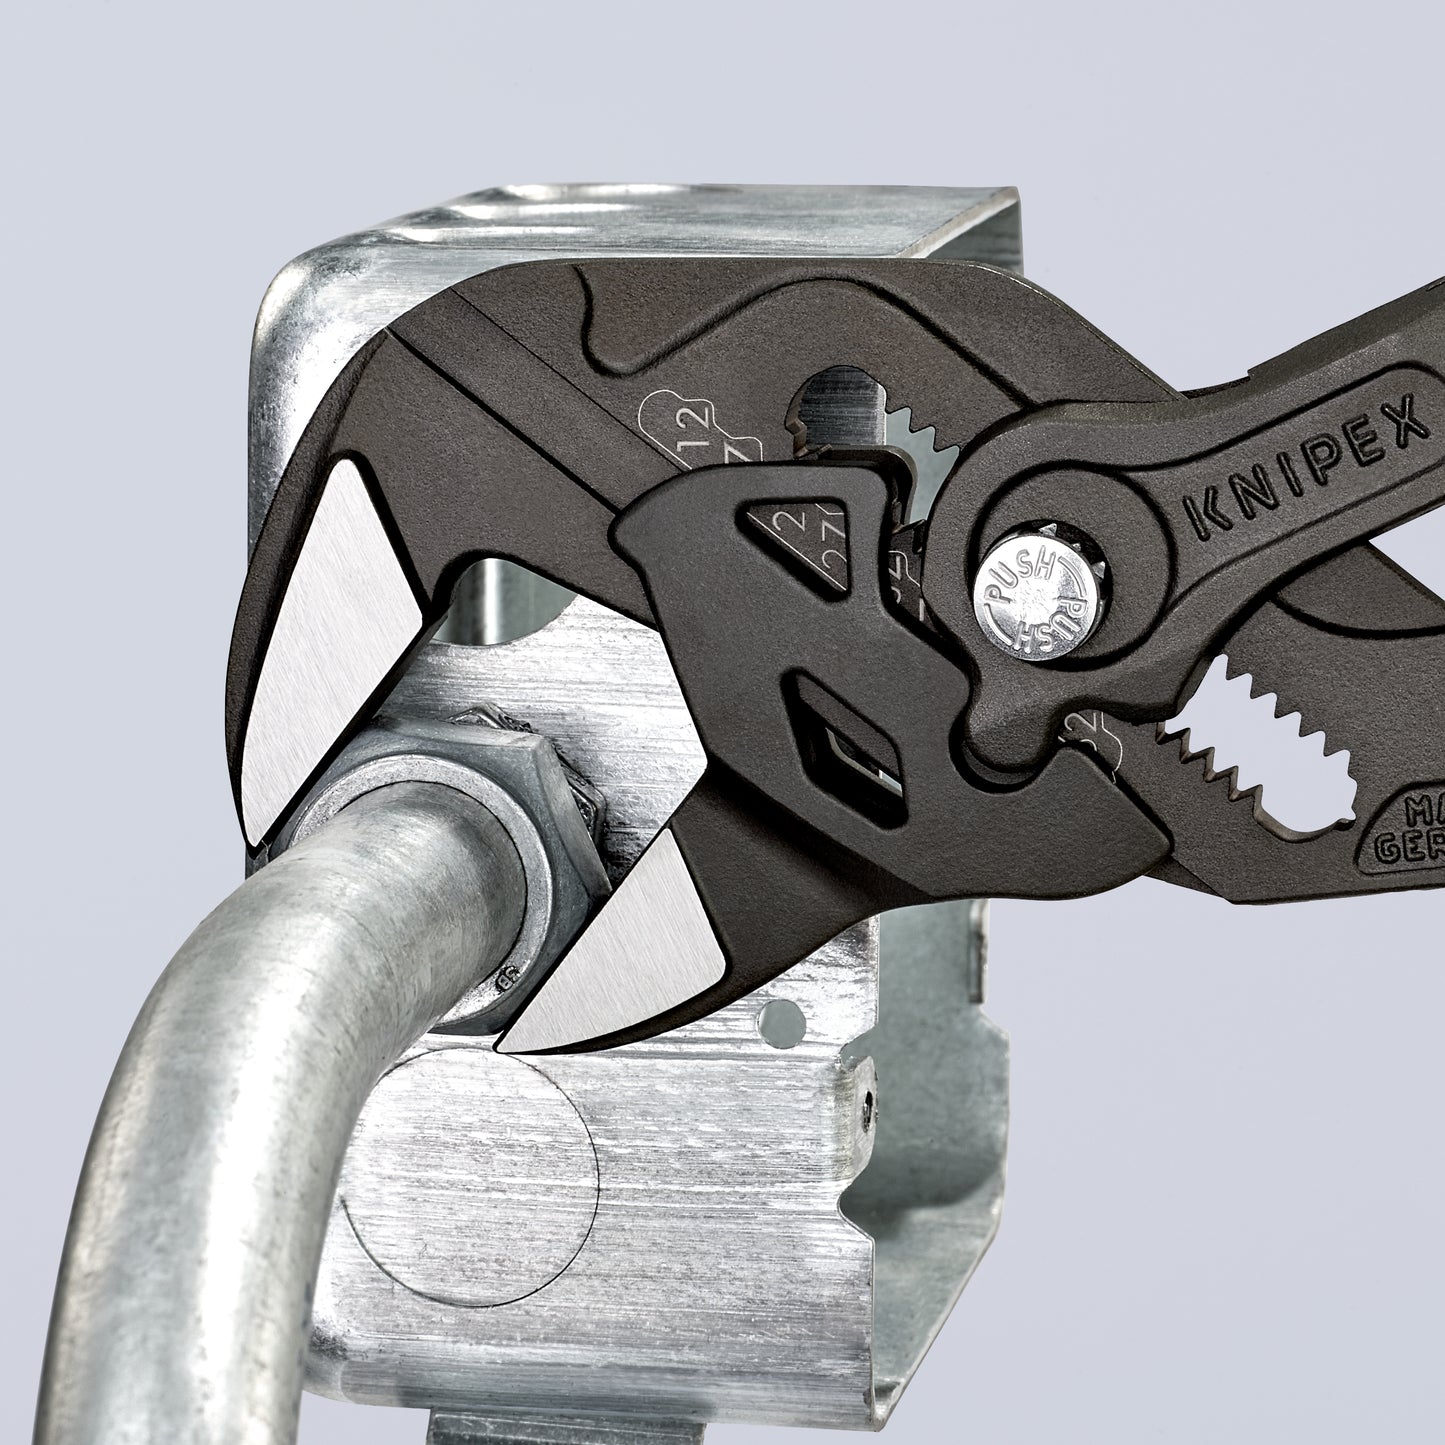 Knipex 86 01 250 - Tenaza llave Knipex 250 mm con mangos PVC y acabado negro atramentado